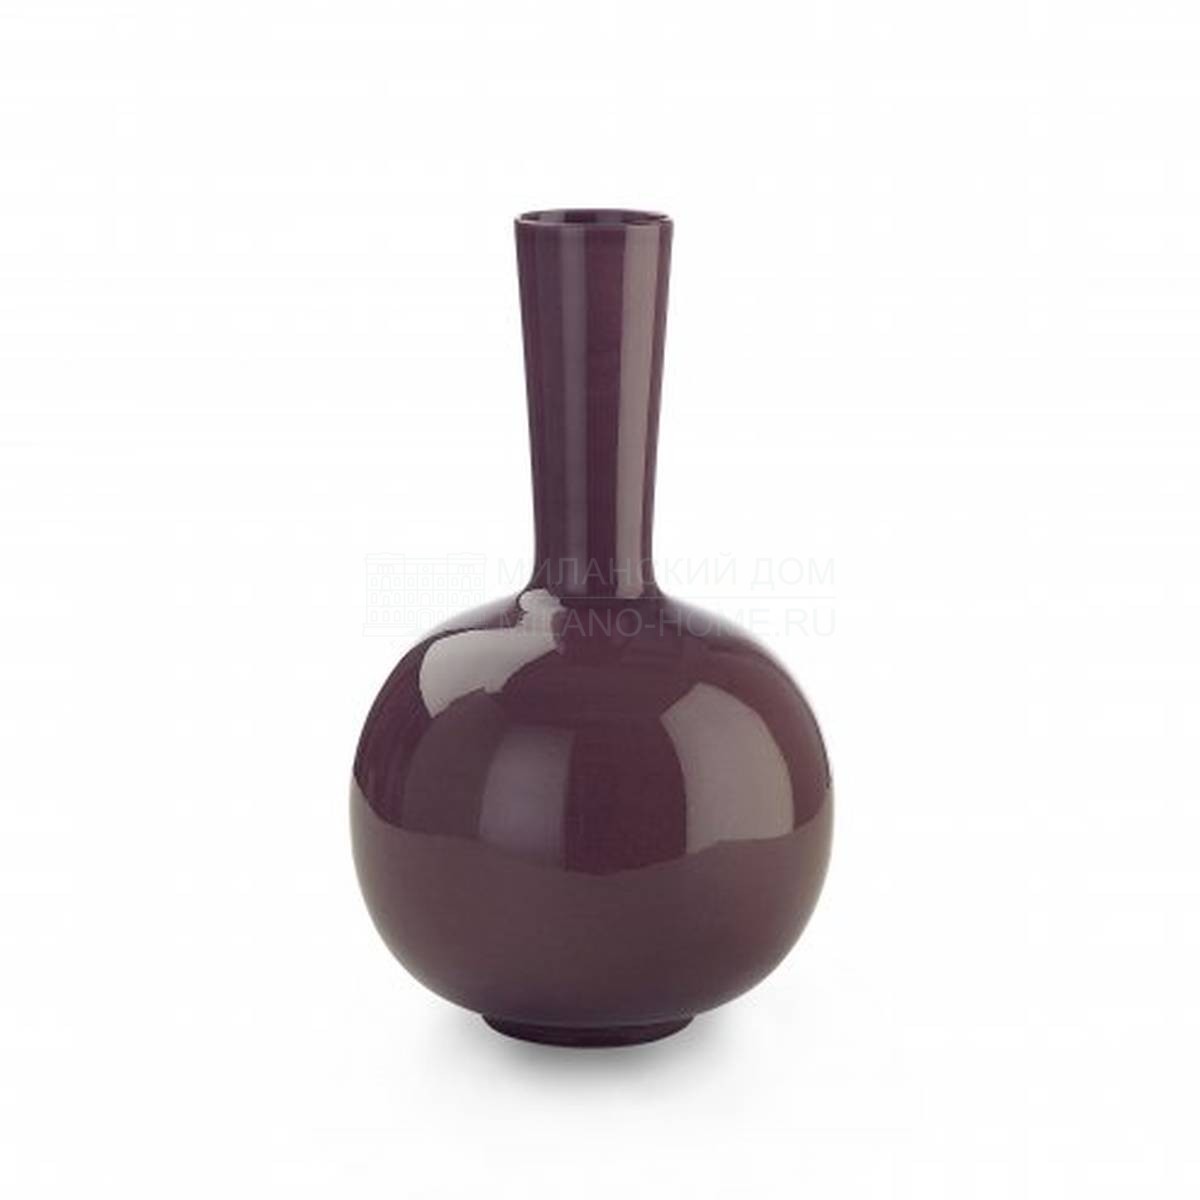 Ваза Oxo large vase из Италии фабрики MARIONI